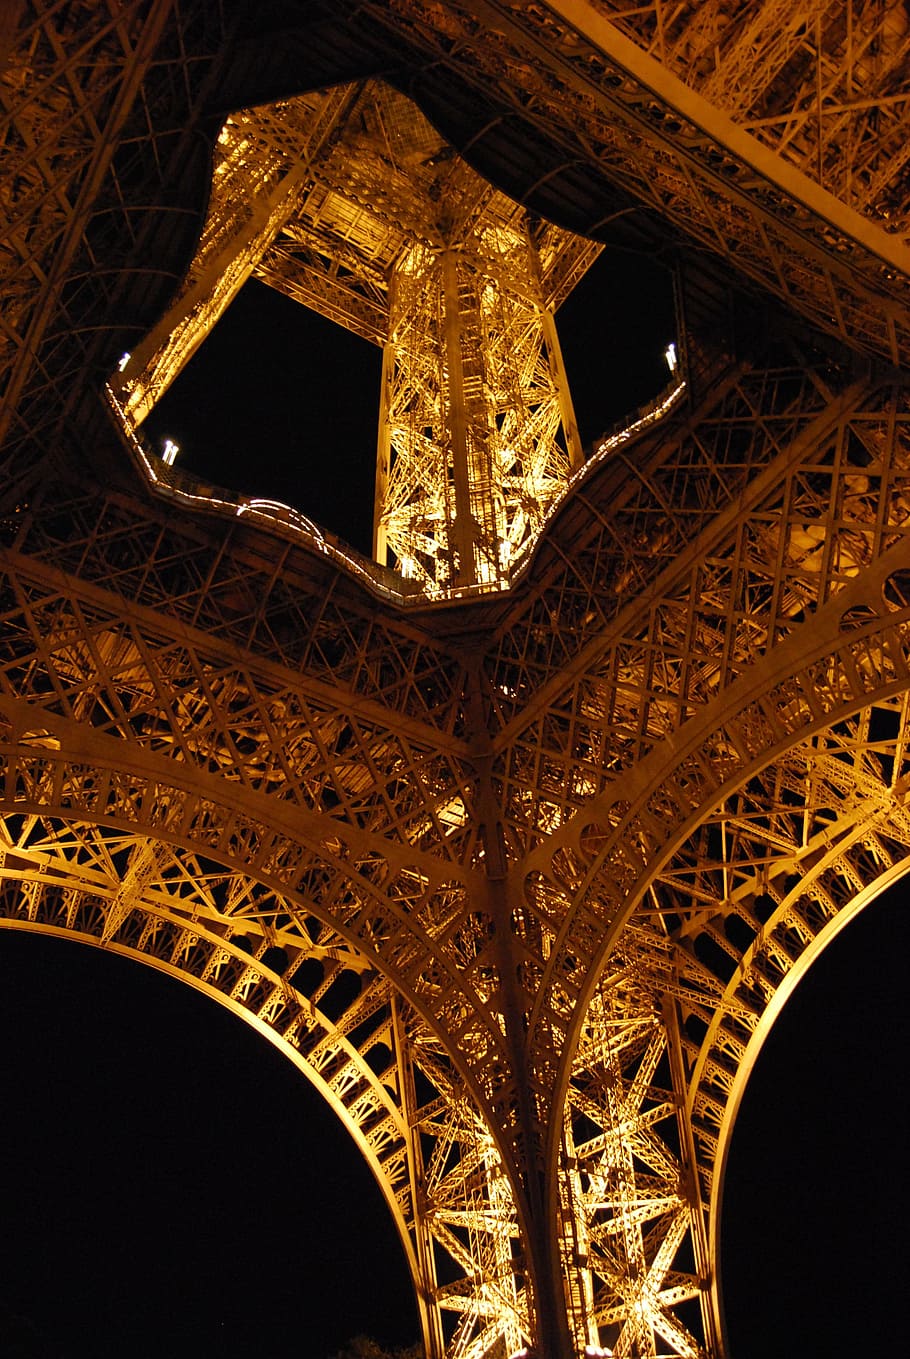 パリ, エッフェル塔, タワー, エッフェル, フランス, 建築, ヨーロッパ, ランドマーク, 観光, 旅行